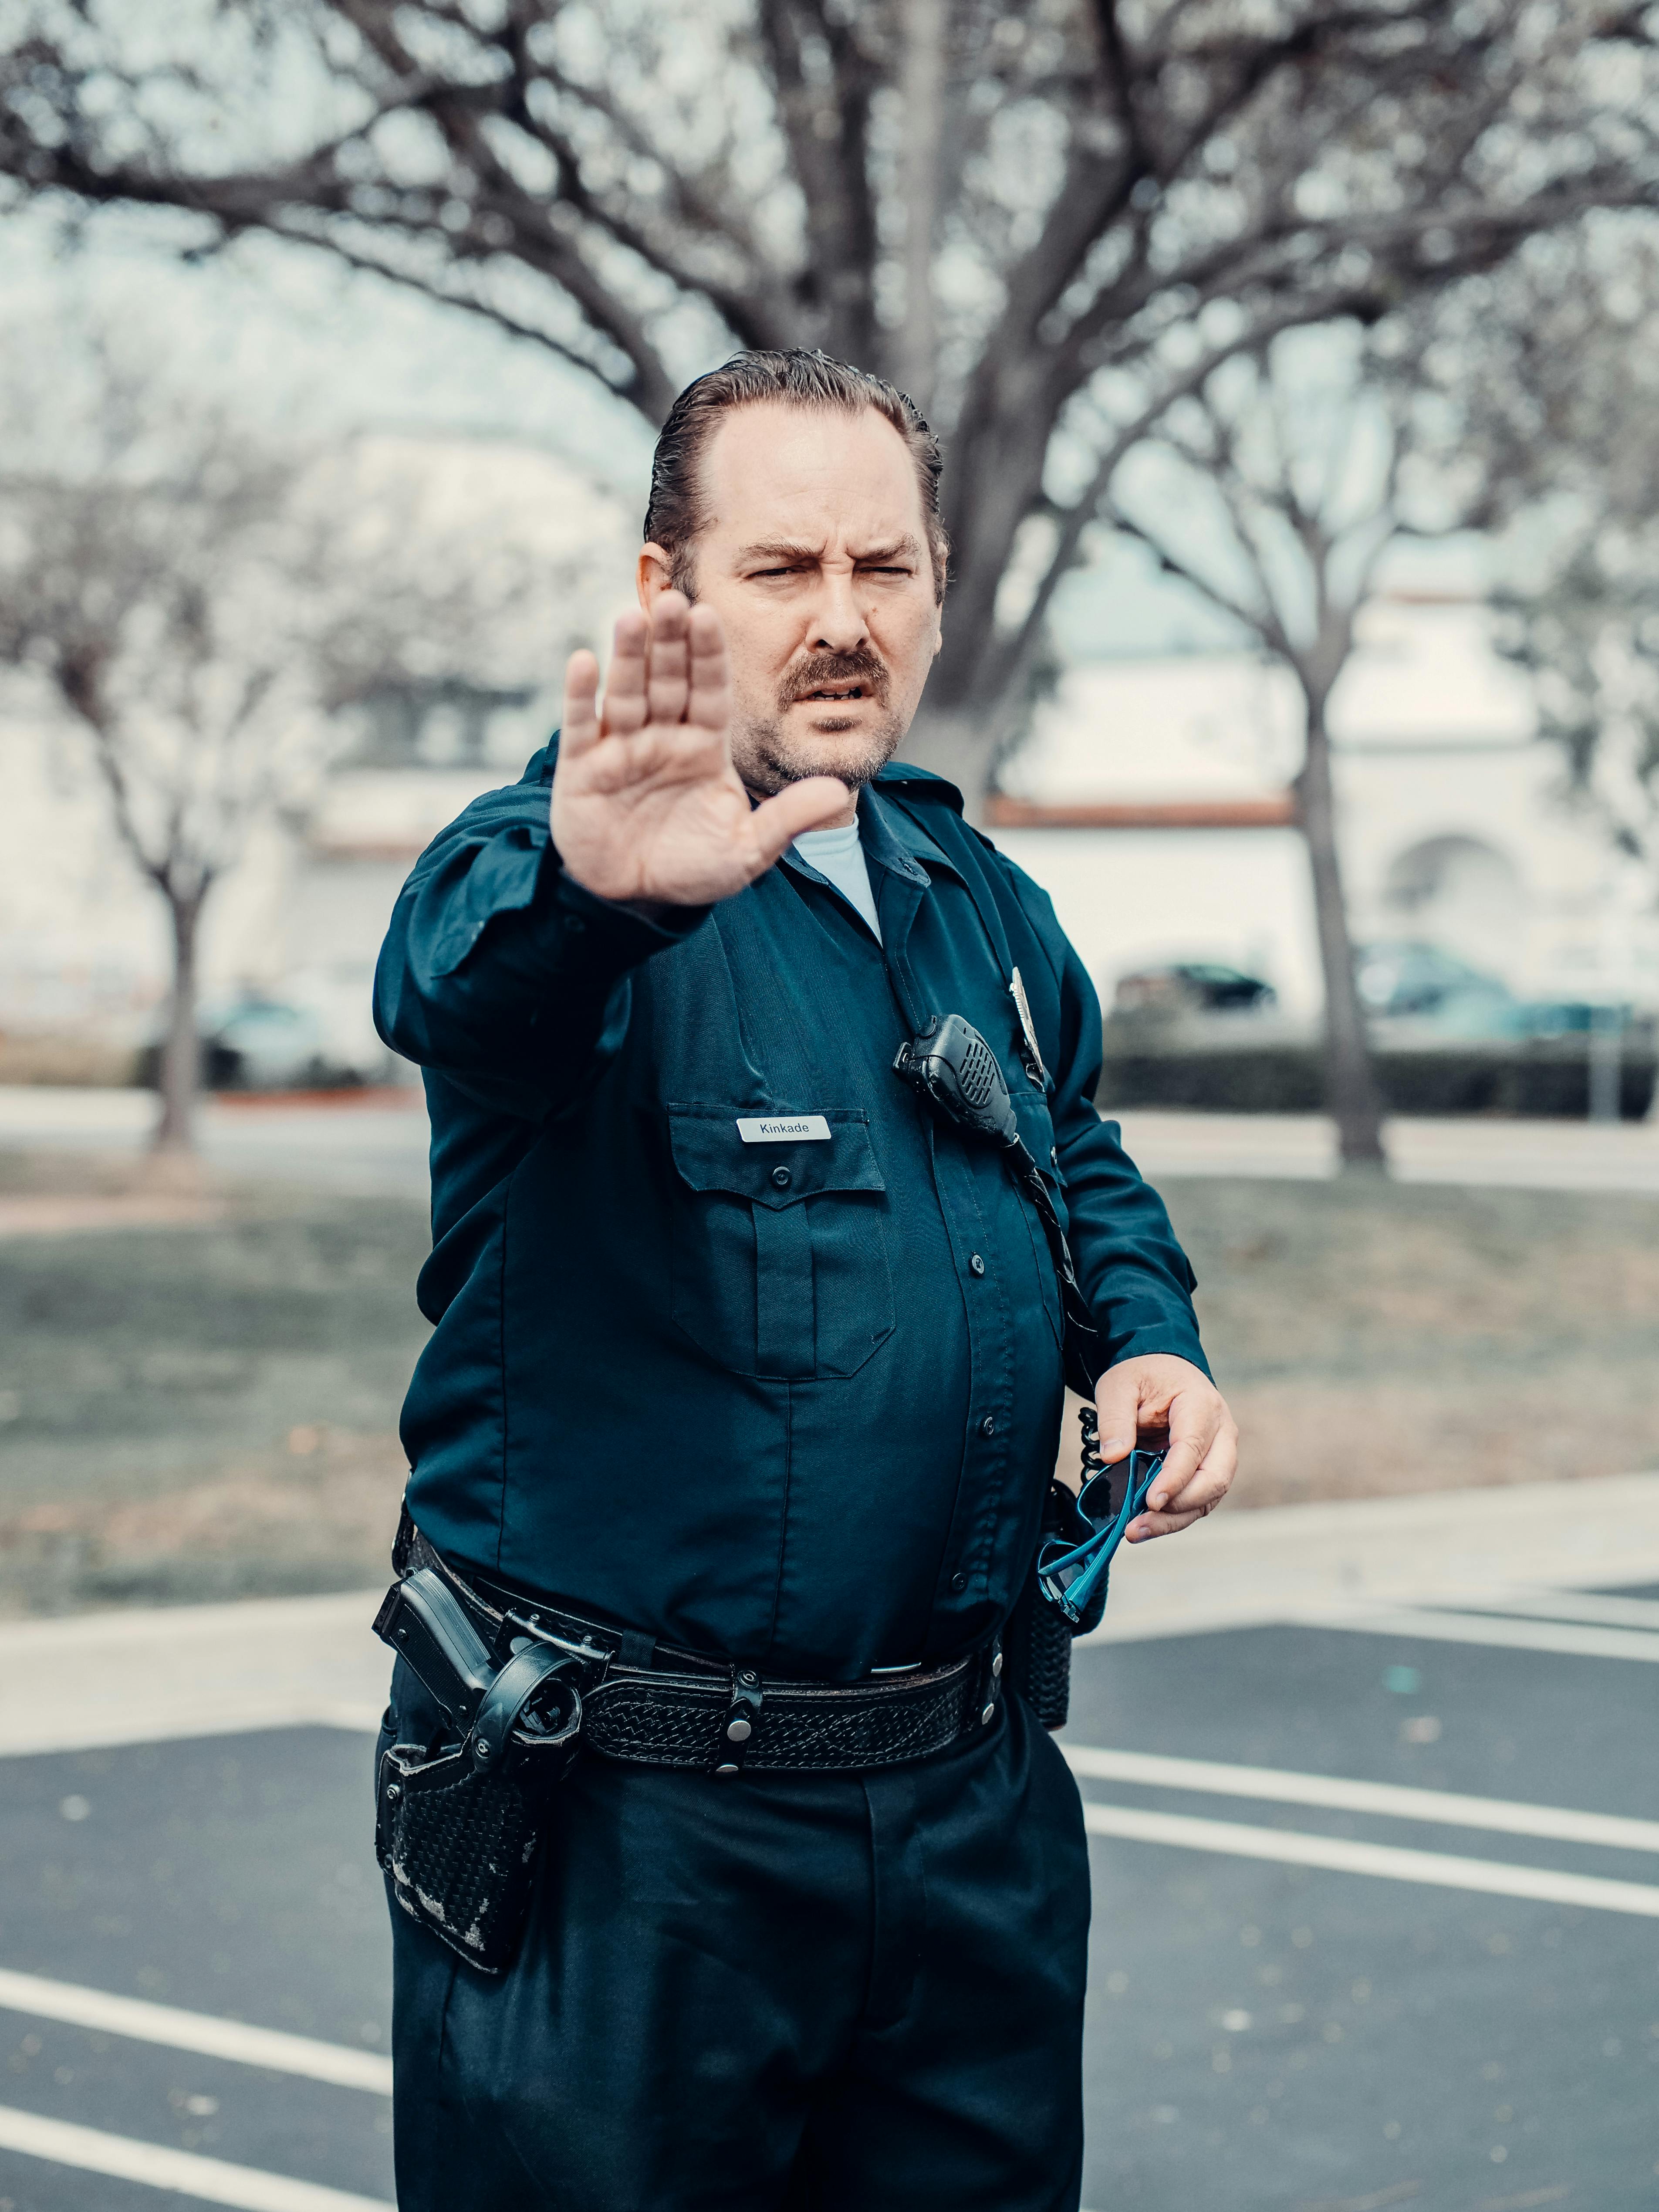 Ein Polizist, der jemanden anhält | Quelle: Pexels